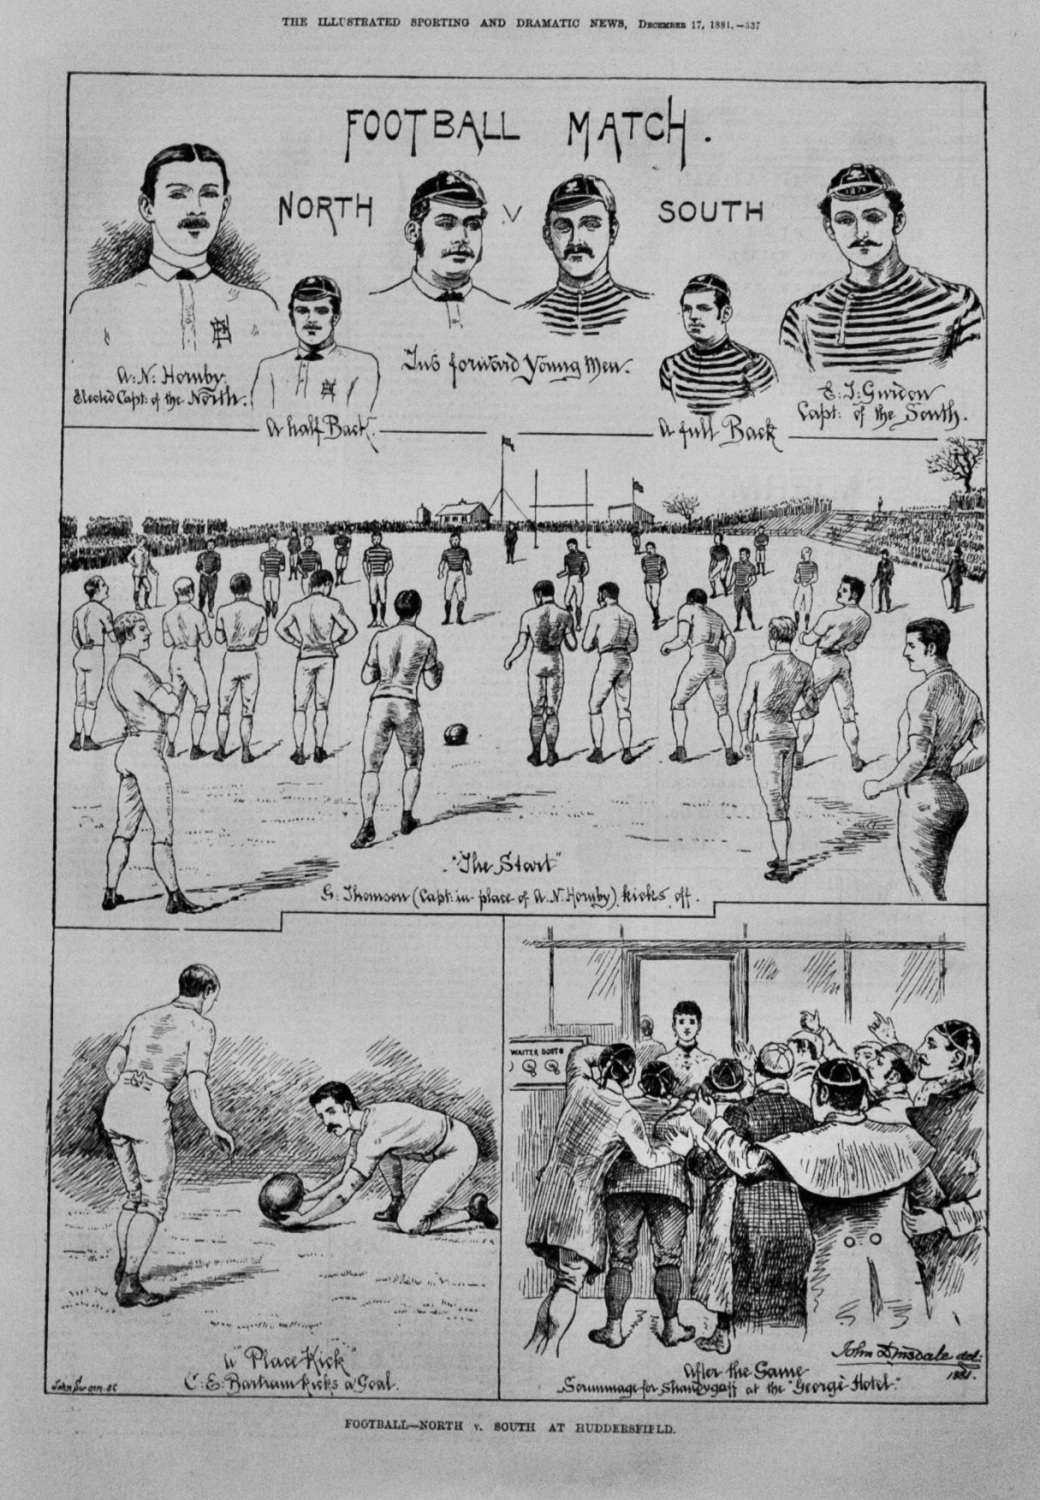 Football - North v. South at Huddersfield.  1881.